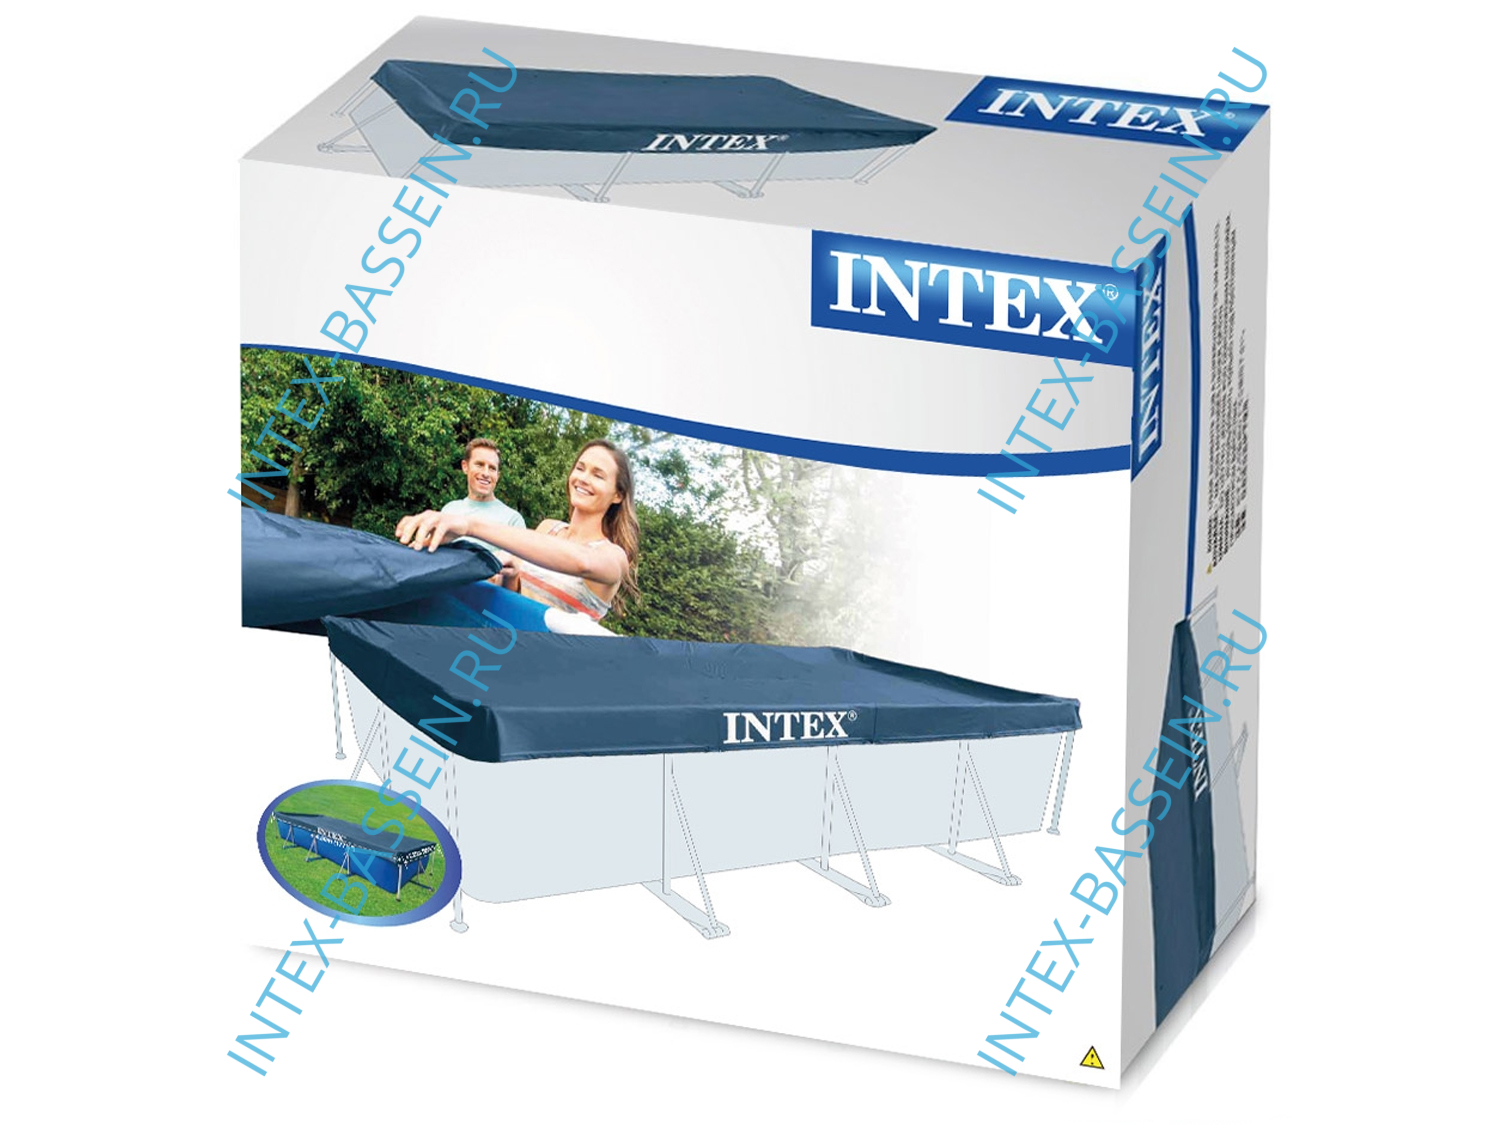 Тент INTEX для каркасных бассейнов 4.5 x 2.2 м, артикул 28039